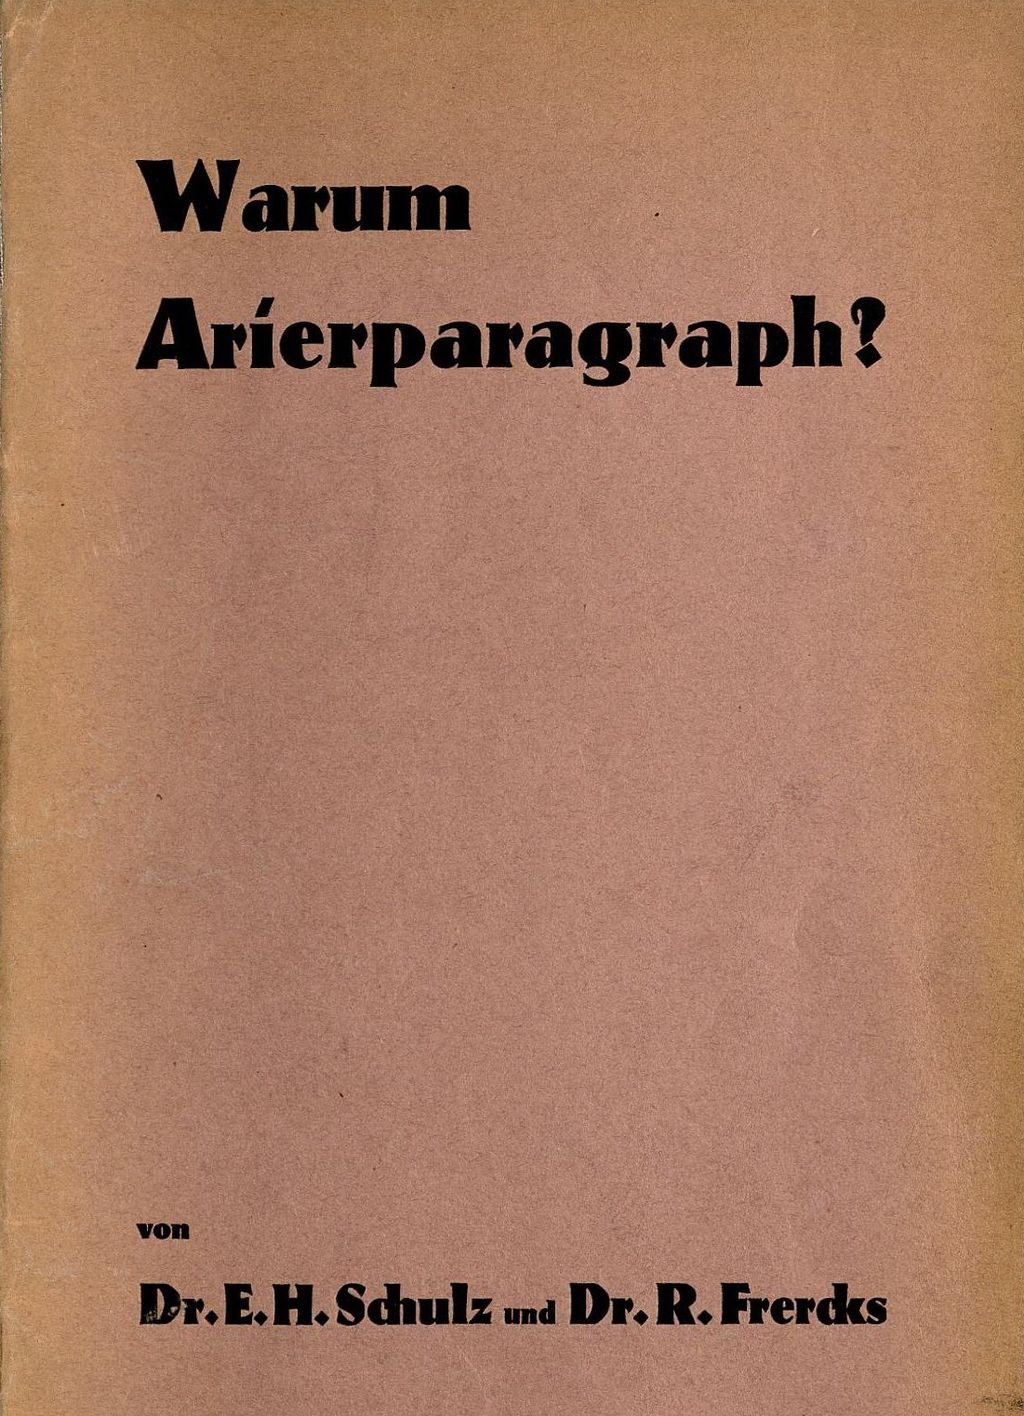 Buch: "Warum Arierparagraph?", 1934